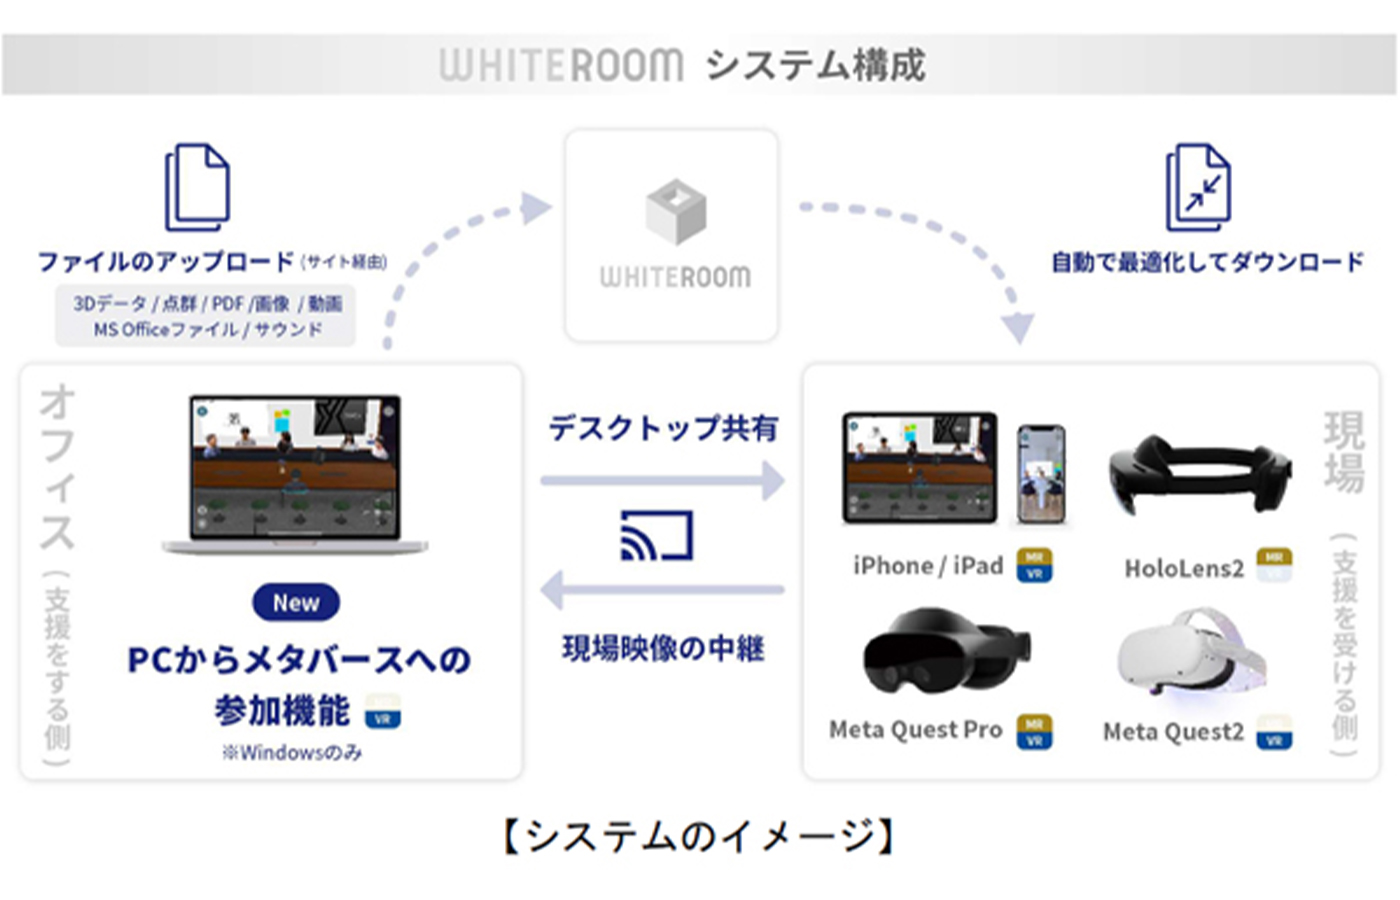 企業の現場業務を効率化するメタバースプラットフォーム「WHITEROOM」に新機能追加